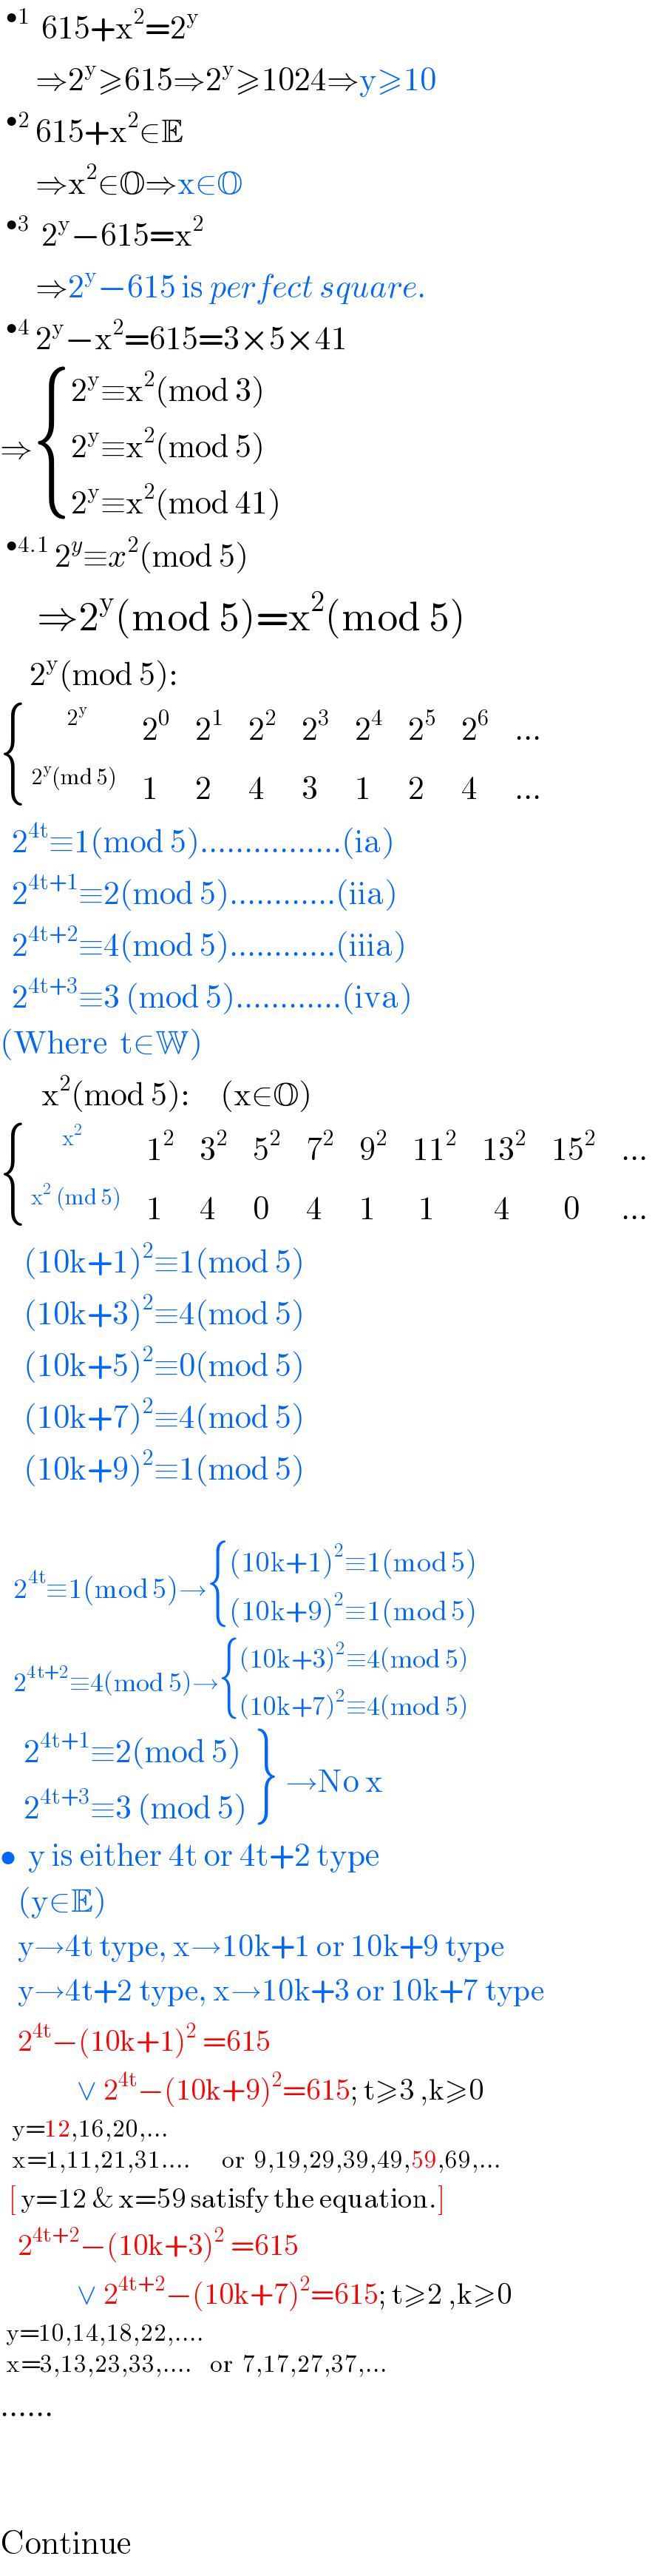 ^(•1)   615+x^2 =2^y         ⇒2^y ≥615⇒2^y ≥1024⇒y≥10  ^(•2)  615+x^2 ∈E        ⇒x^2 ∈O⇒x∈O  ^(•3)   2^y −615=x^2         ⇒2^y −615 is perfect square.  ^(•4)  2^y −x^2 =615=3×5×41  ⇒ { ((2^y ≡x^2 (mod 3))),((2^y ≡x^2 (mod 5))),((2^y ≡x^2 (mod 41))) :}  ^(•4.1)  2^y ≡x^2 (mod 5)       ⇒2^y (mod 5)=x^2 (mod 5)       2^y (mod 5):   { ((^(        2^y )  ),2^0 ,2^1 ,2^2 ,2^3 ,2^4 ,2^5 ,2^6 ,(...)),(^(2^y (md 5)) ,1,2,4,3,1,2,4,(...)) :}    2^(4t) ≡1(mod 5)................(ia)    2^(4t+1) ≡2(mod 5)............(iia)    2^(4t+2) ≡4(mod 5)............(iiia)    2^(4t+3) ≡3 (mod 5)............(iva)  (Where  t∈W)         x^2 (mod 5):     (x∈O)   { (^(       x^2 ) ,1^2 ,3^2 ,5^2 ,7^2 ,9^2 ,(11^2 ),(13^2 ),(15^2 ),(...)),(^(x^2  (md 5)) ,1,4,0,4,1,( 1),(  4),(  0),(...)) :}      (10k+1)^2 ≡1(mod 5)      (10k+3)^2 ≡4(mod 5)      (10k+5)^2 ≡0(mod 5)      (10k+7)^2 ≡4(mod 5)      (10k+9)^2 ≡1(mod 5)       2^(4t) ≡1(mod 5)→ { (((10k+1)^2 ≡1(mod 5))),(((10k+9)^2 ≡1(mod 5))) :}     2^(4t+2) ≡4(mod 5)→ { (((10k+3)^2 ≡4(mod 5))),(((10k+7)^2 ≡4(mod 5))) :}      {: (( 2^(4t+1) ≡2(mod 5))),(( 2^(4t+3) ≡3 (mod 5))) } →No x  •  y is either 4t or 4t+2 type     (y∈E)     y→4t type, x→10k+1 or 10k+9 type     y→4t+2 type, x→10k+3 or 10k+7 type     2^(4t) −(10k+1)^(2  ) =615               ∨ 2^(4t) −(10k+9)^2 =615; t≥3 ,k≥0    _(x=1,11,21,31....       or  9,19,29,39,49,59,69,...)^(y=12,16,20,...)     [ y=12 & x=59 satisfy the equation.]     2^(4t+2) −(10k+3)^(2  ) =615               ∨ 2^(4t+2) −(10k+7)^2 =615; t≥2 ,k≥0   _(x=3,13,23,33,....    or  7,17,27,37,...)^(y=10,14,18,22,....)   ......            Continue  